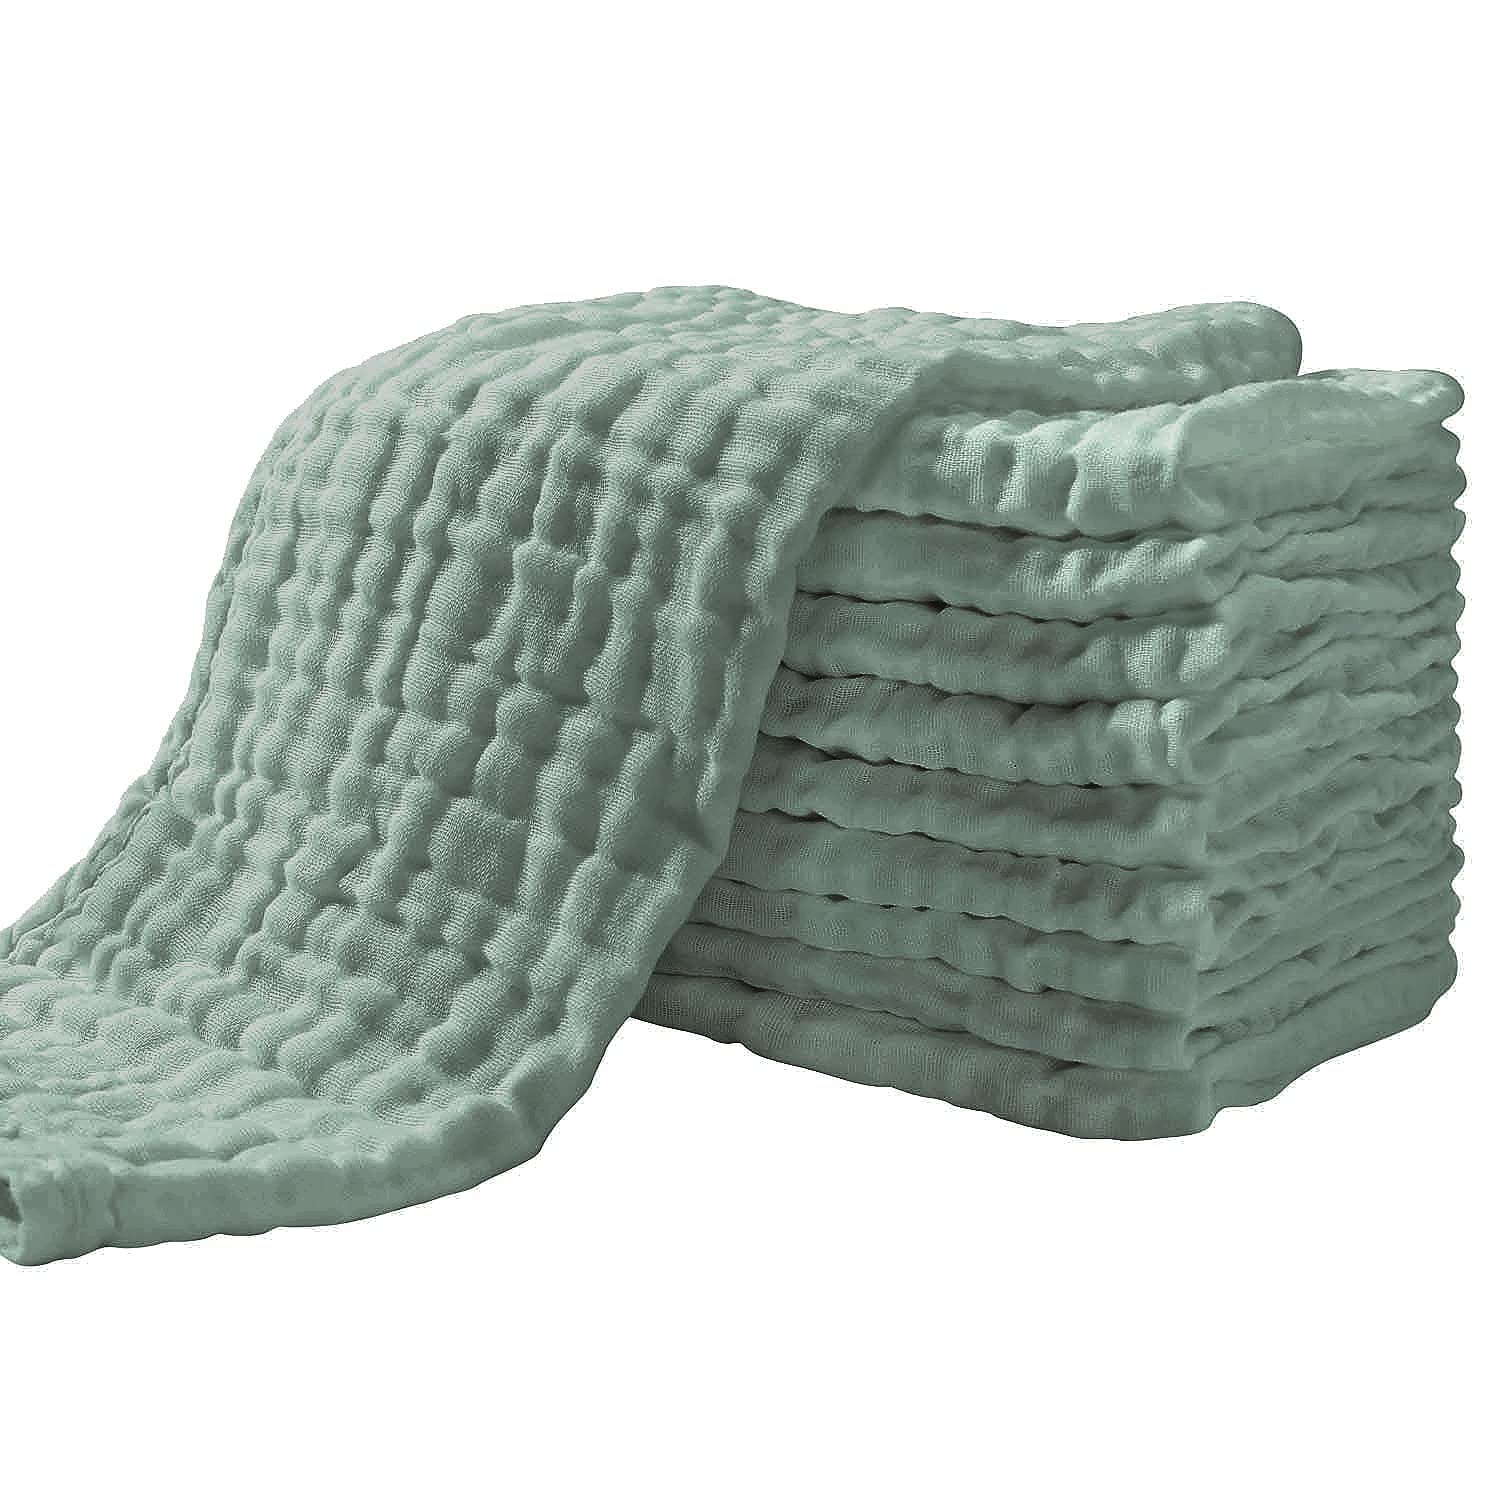 Yoofoss Natural Breathable Muslin Washcloths, 10-Pack